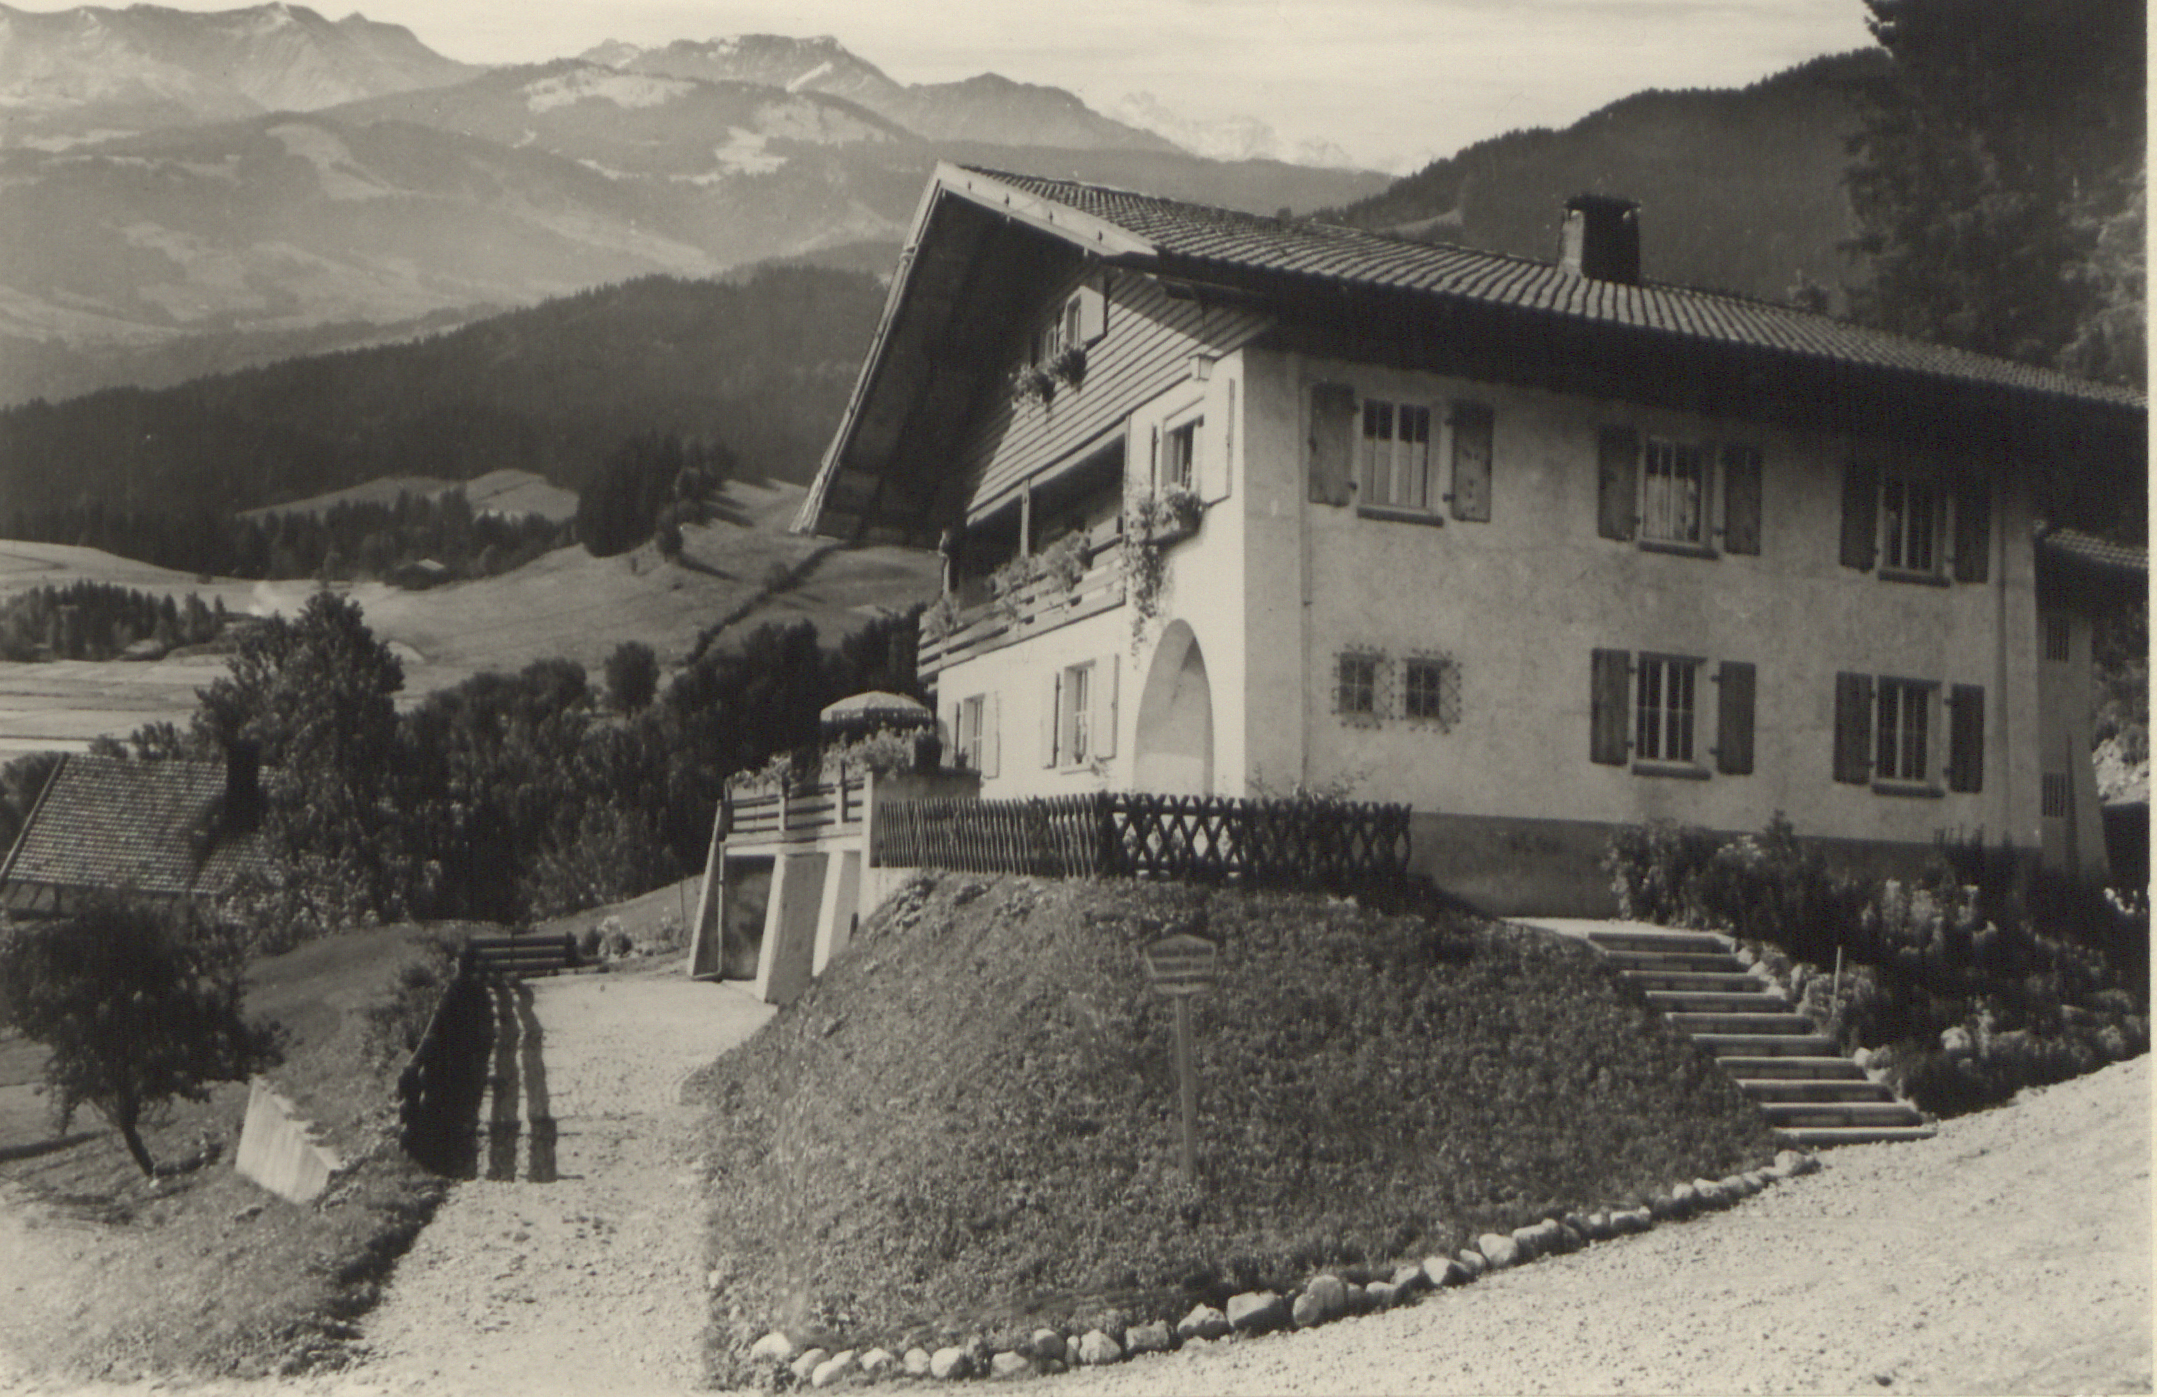  Erholungsheime wie das Kinderheim Bergfreude in Scheidegg befanden sich oft in ländlicher Umgebung. [Quelle: Landeskirchliches Archiv Stuttgart, U 98]